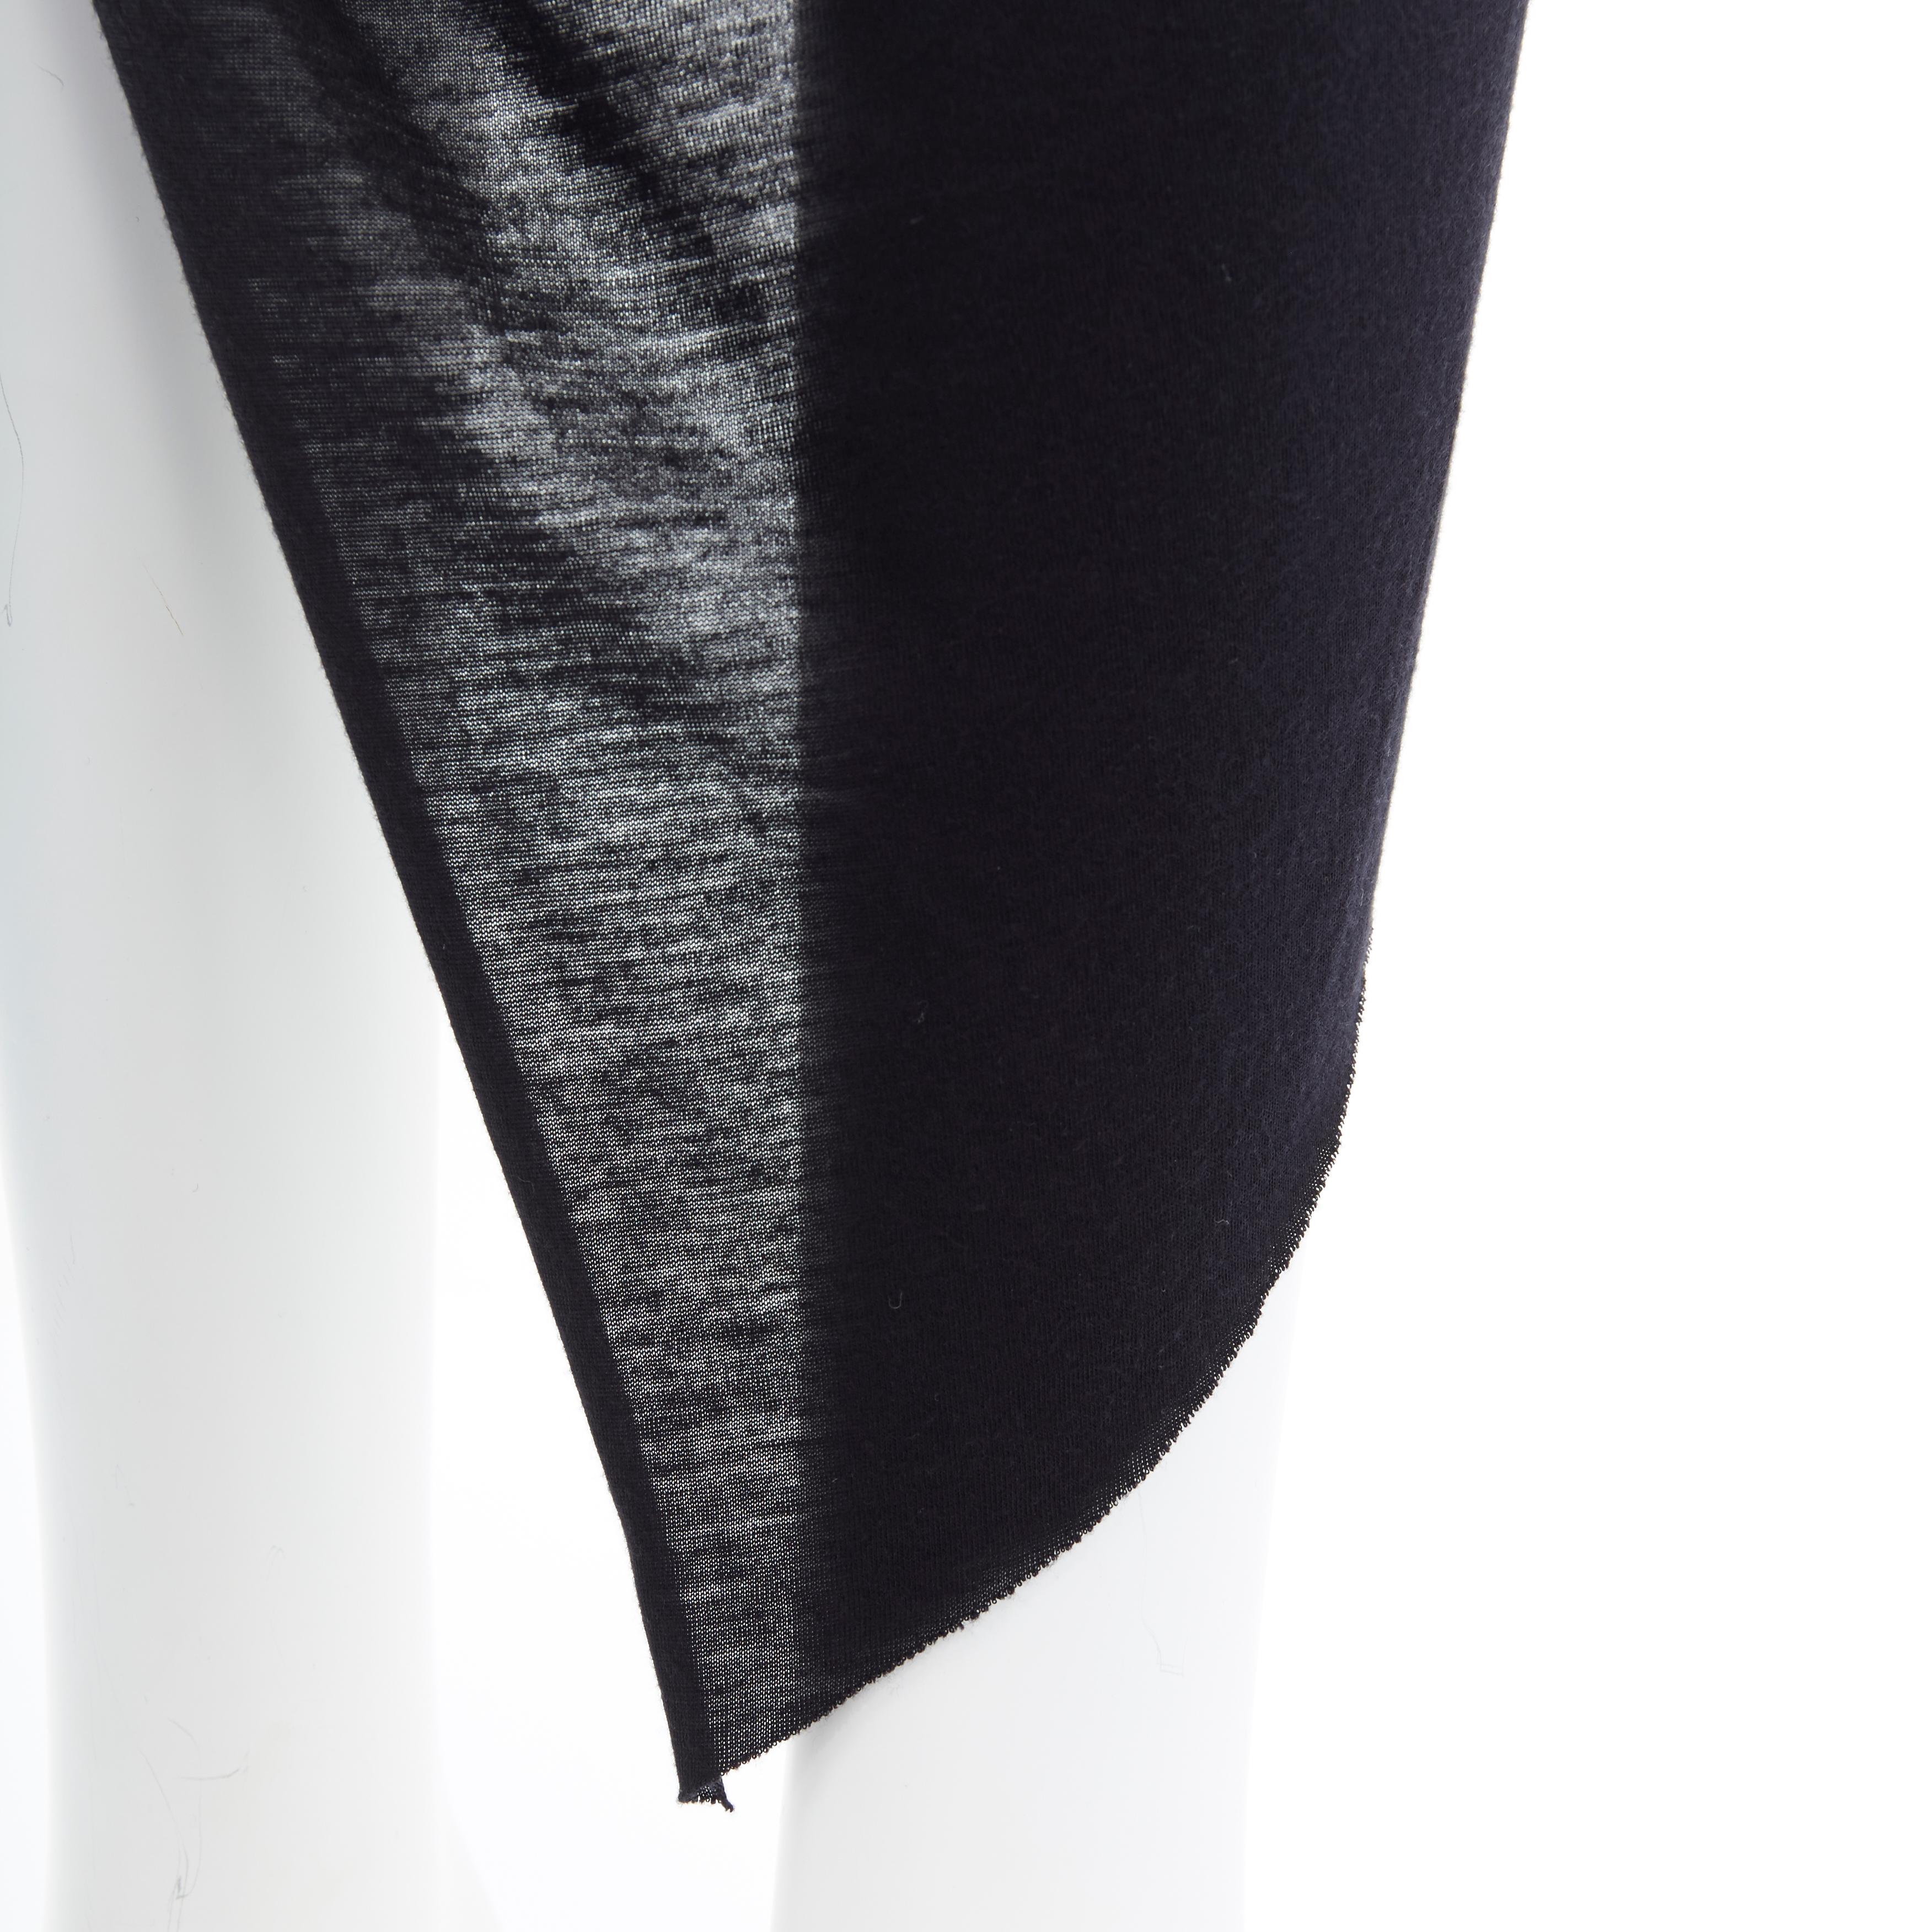 HELMUT HELMUT LANG black micro modal nylon draped open side casual skirt XS 1